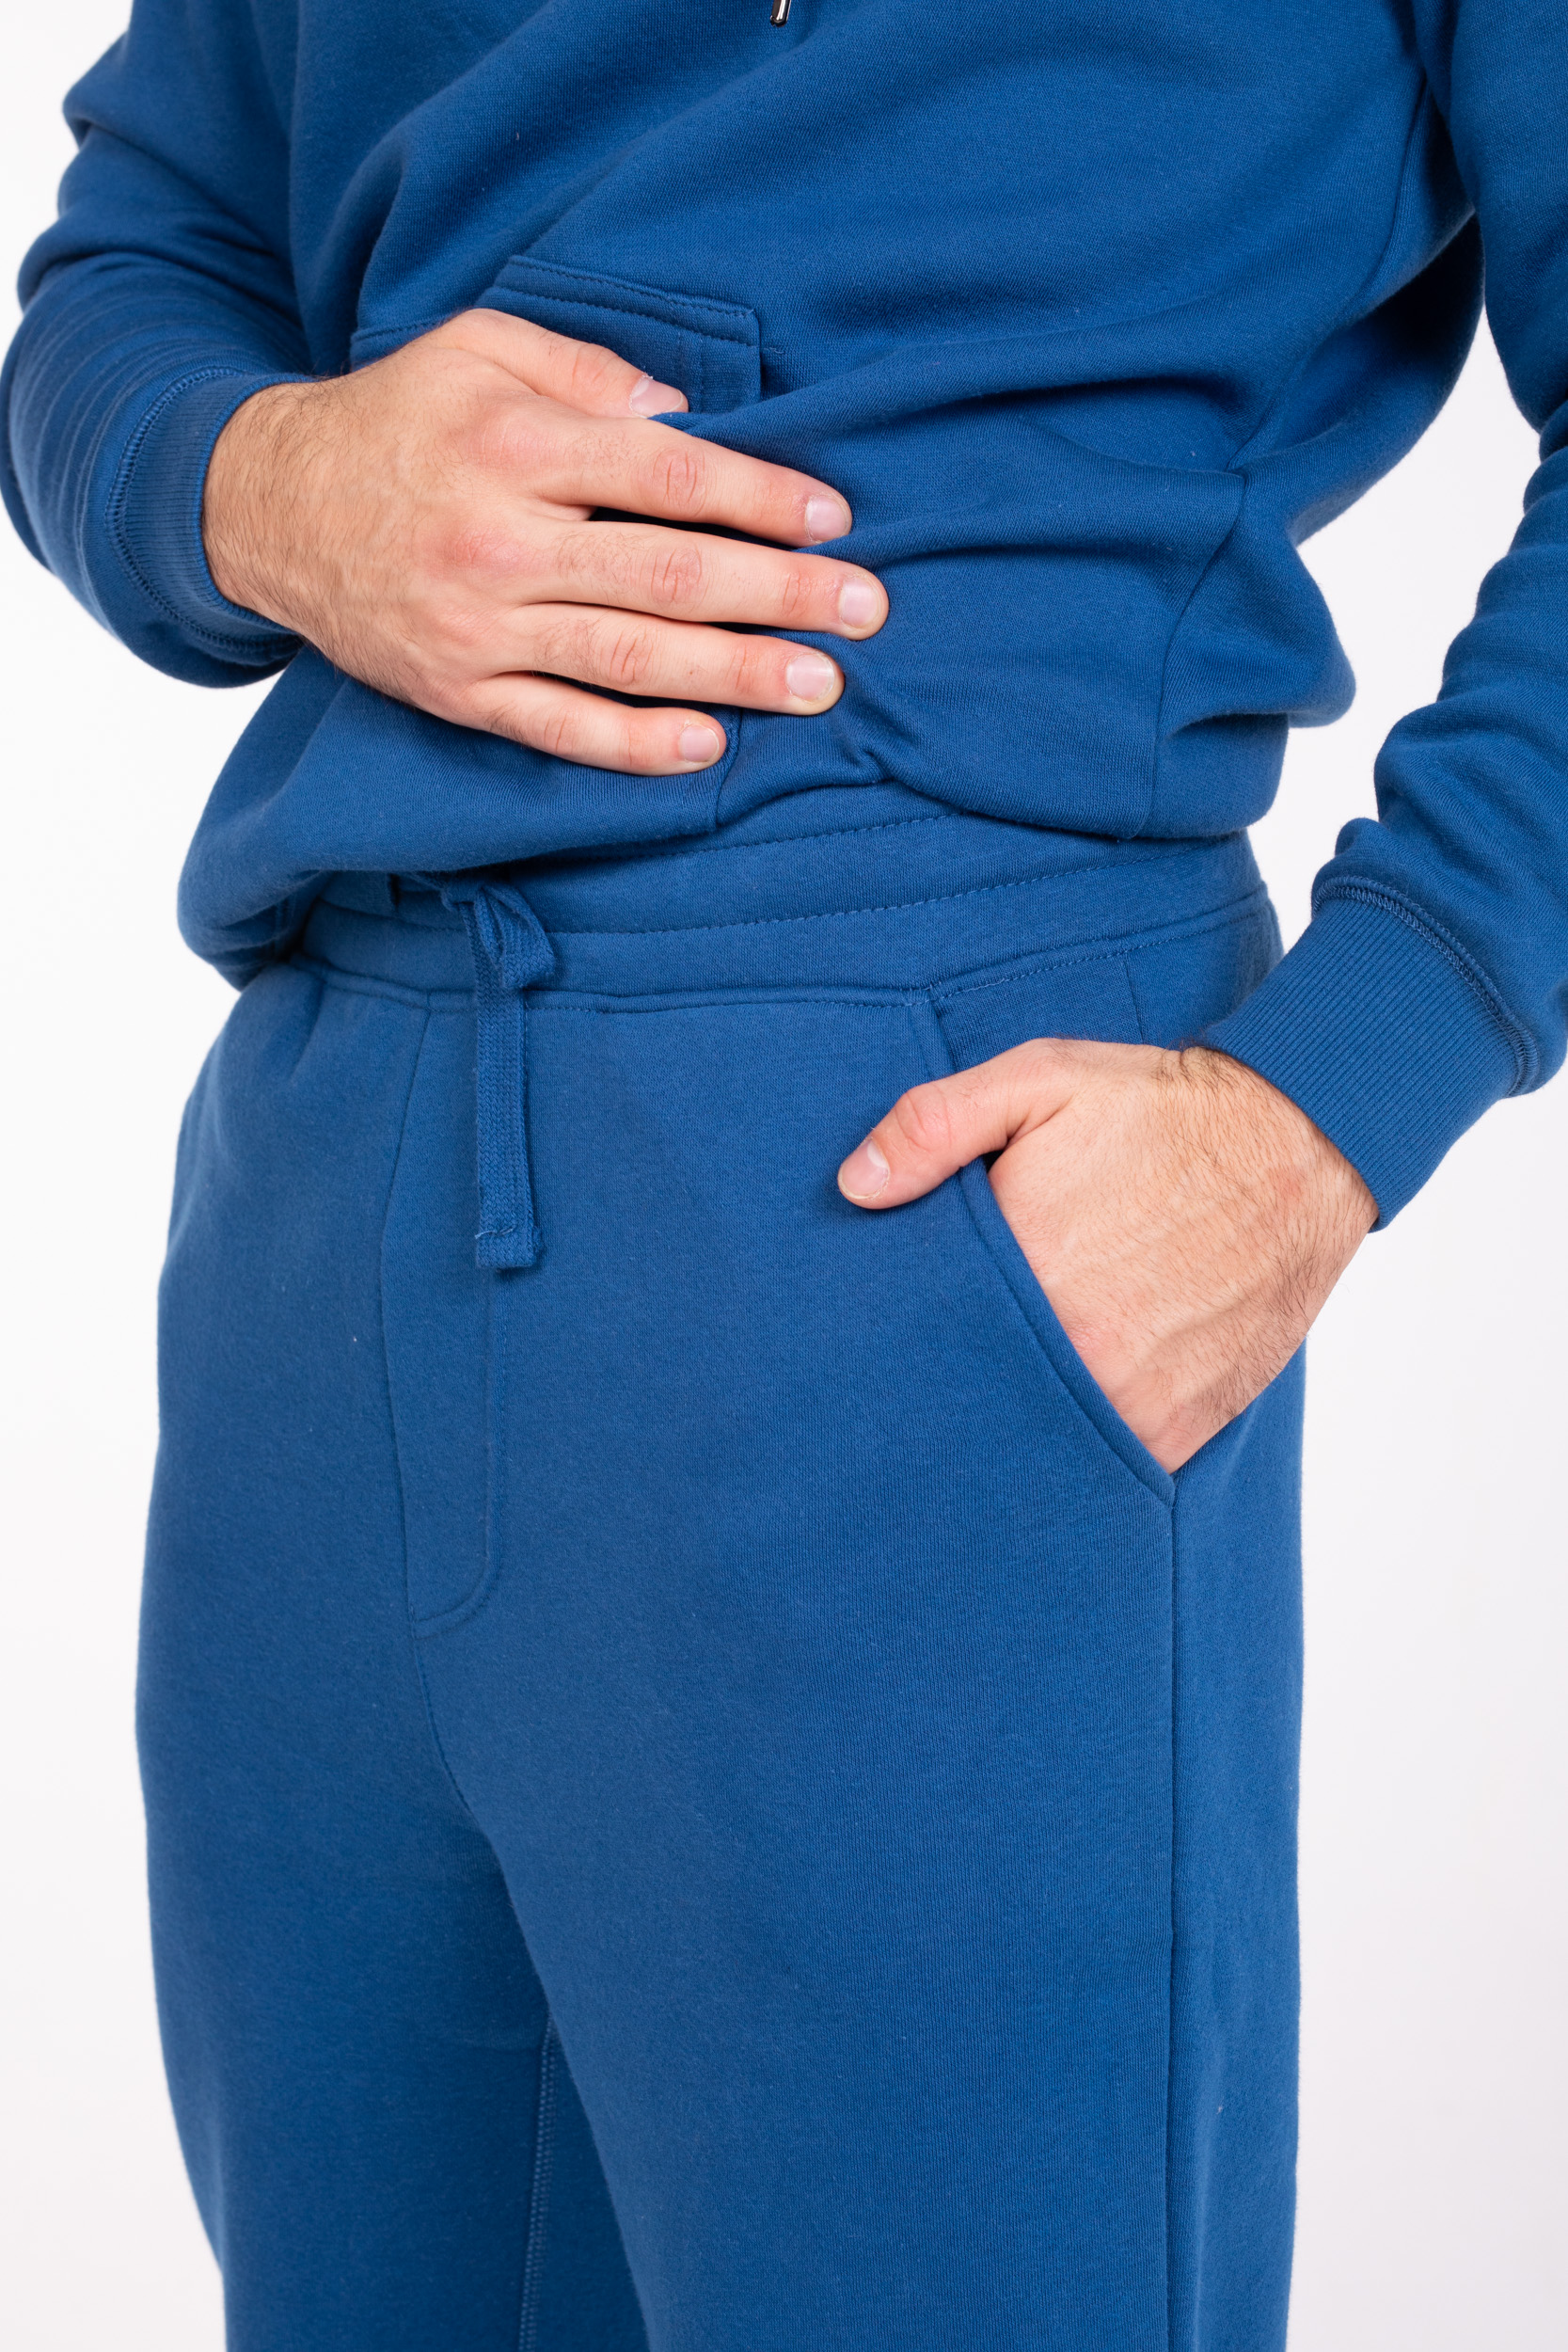 OneRedox - Pantaloni da jogging da uomo, 3628, pantaloni della tuta, per  l'allenamento, blu navy, S : : Moda